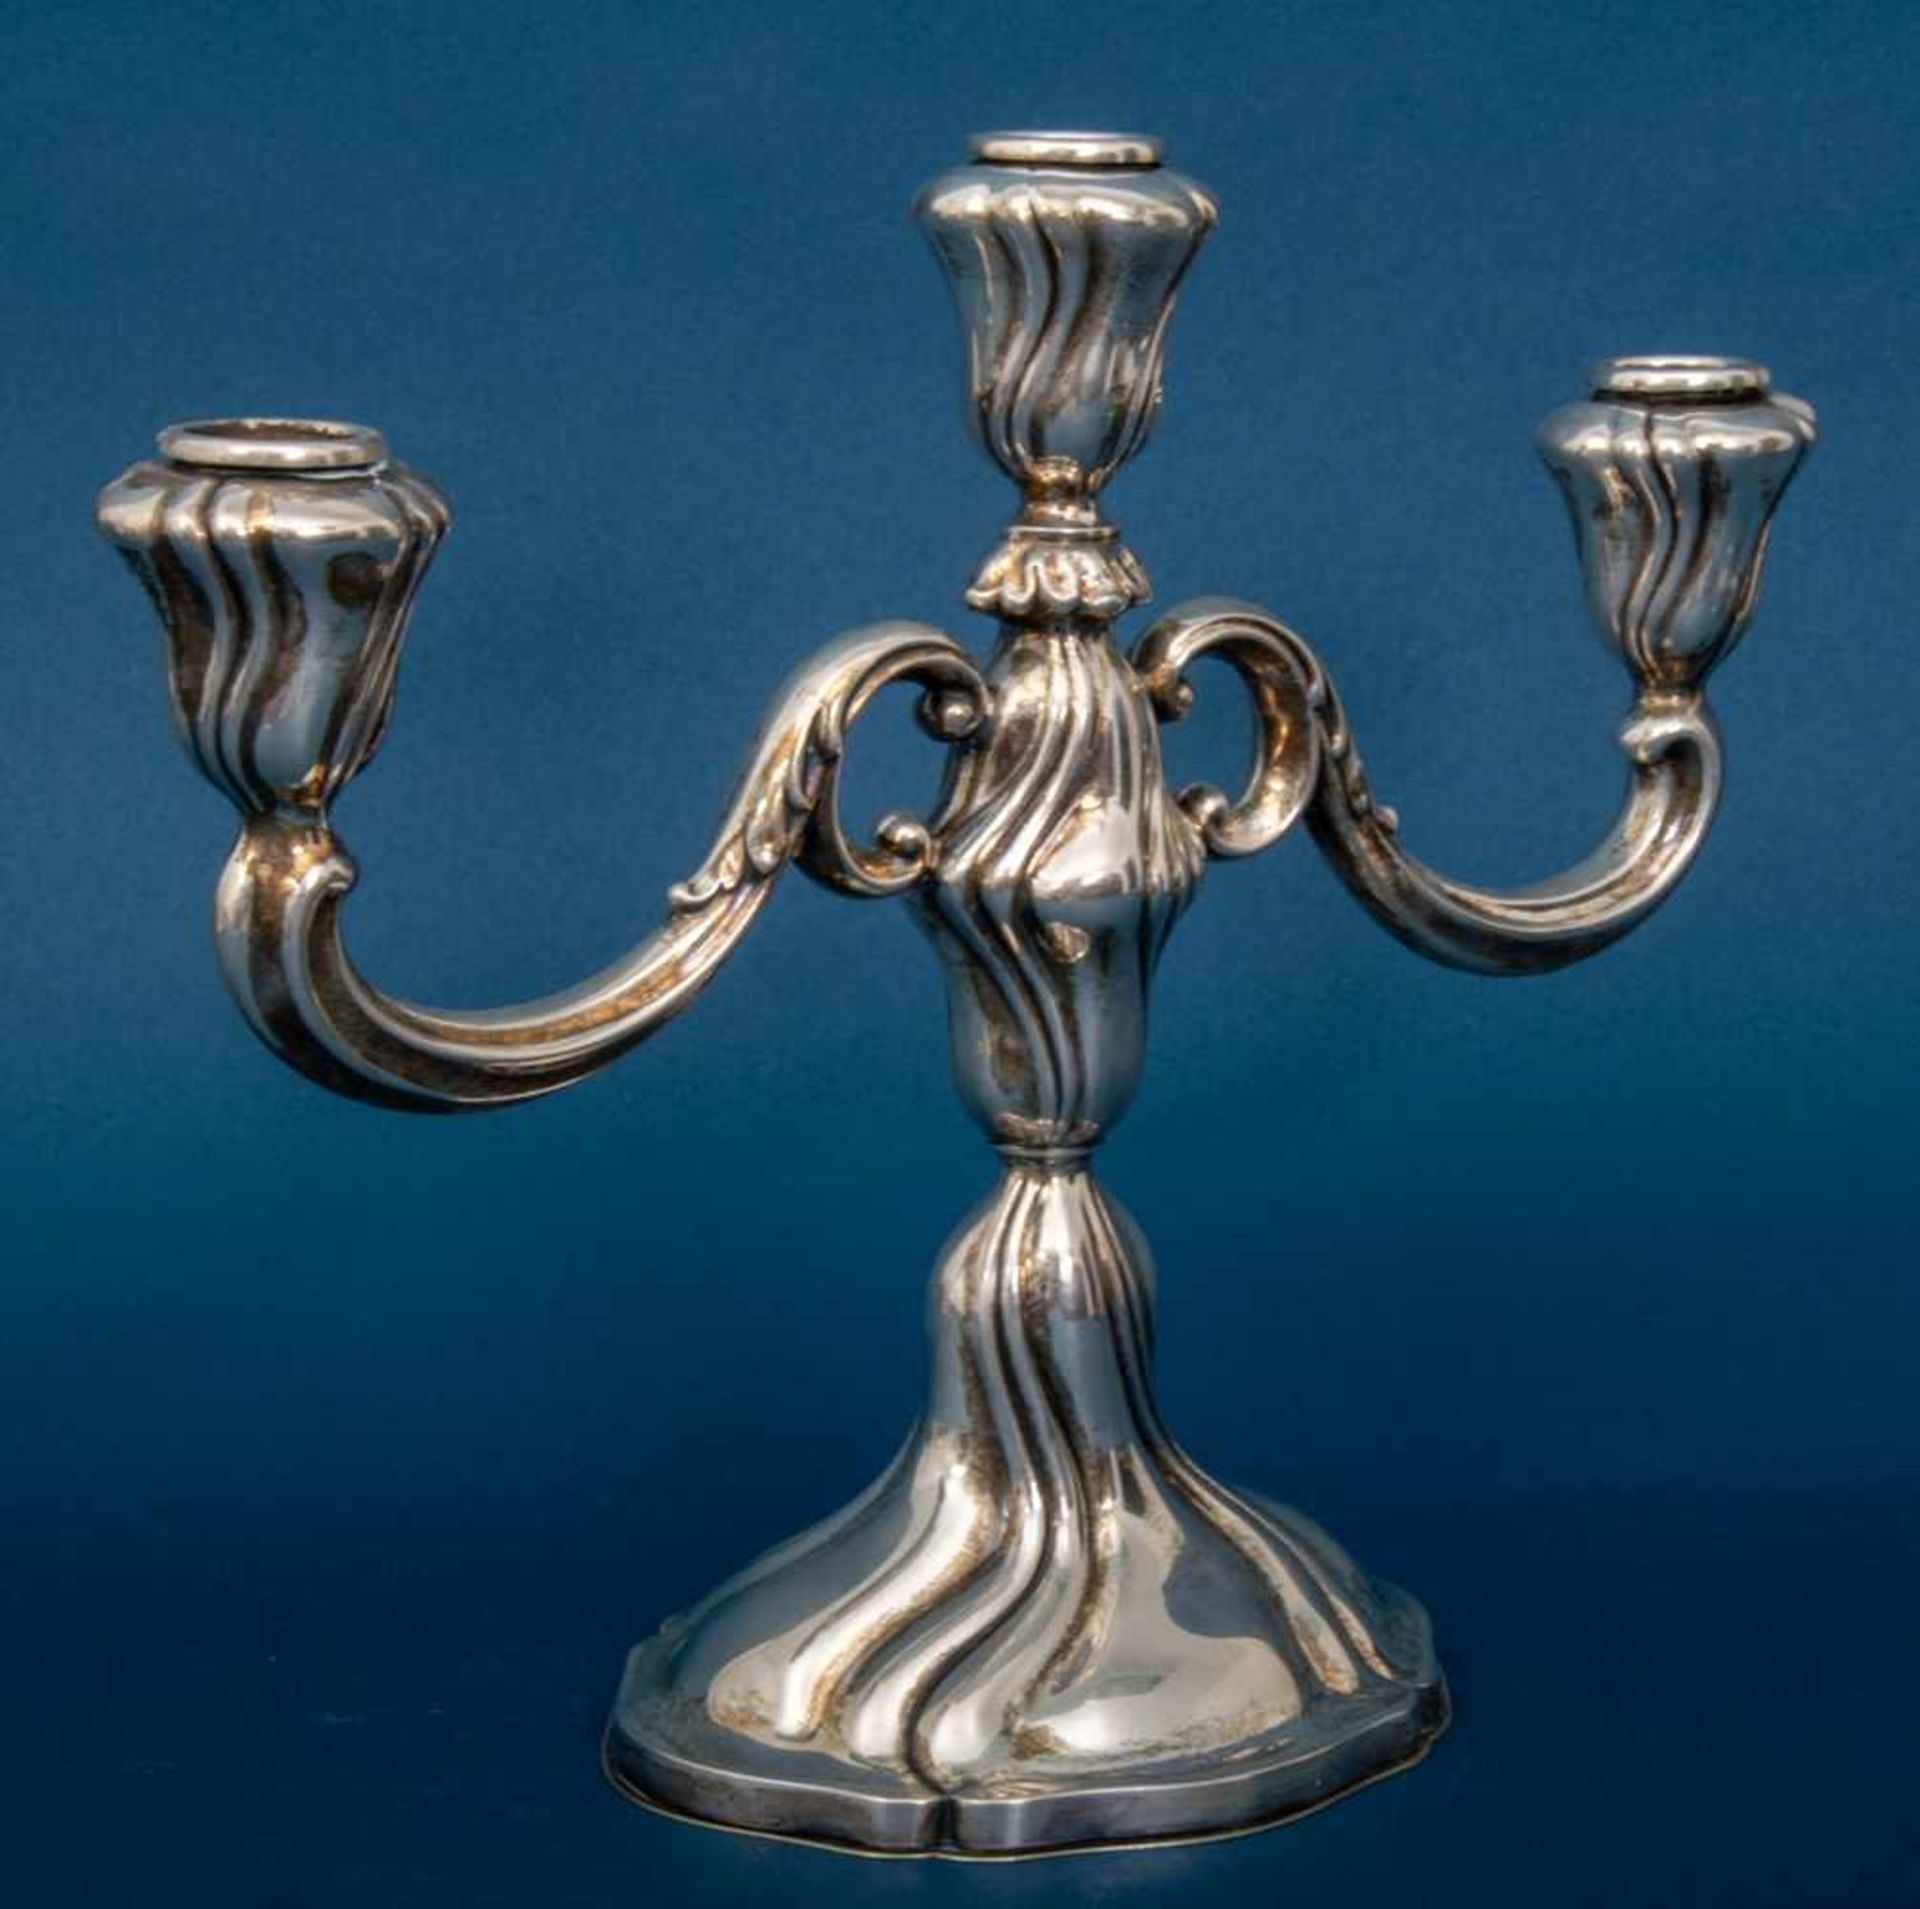 3armiger Tischkerzenleuchter, 835er Silber, Barockstil, Höhe ca. 23,5 cm, Länge ca. 30 cm. Sehr - Bild 2 aus 7